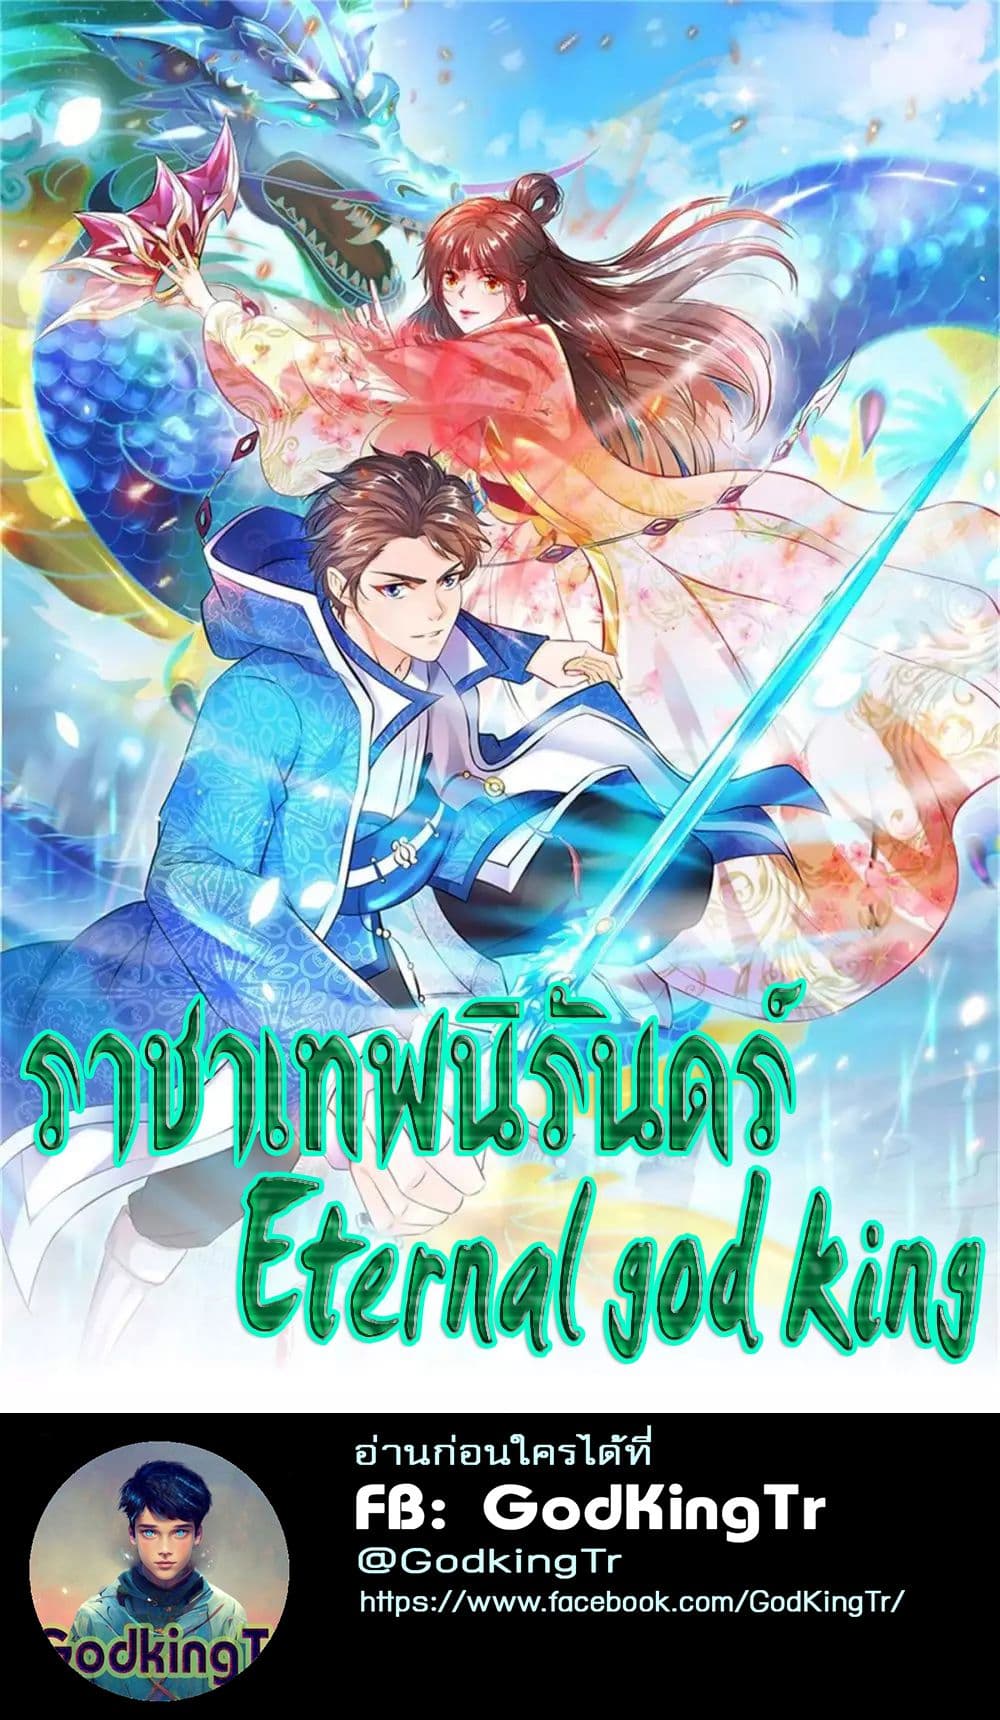 Eternal god King 29 01